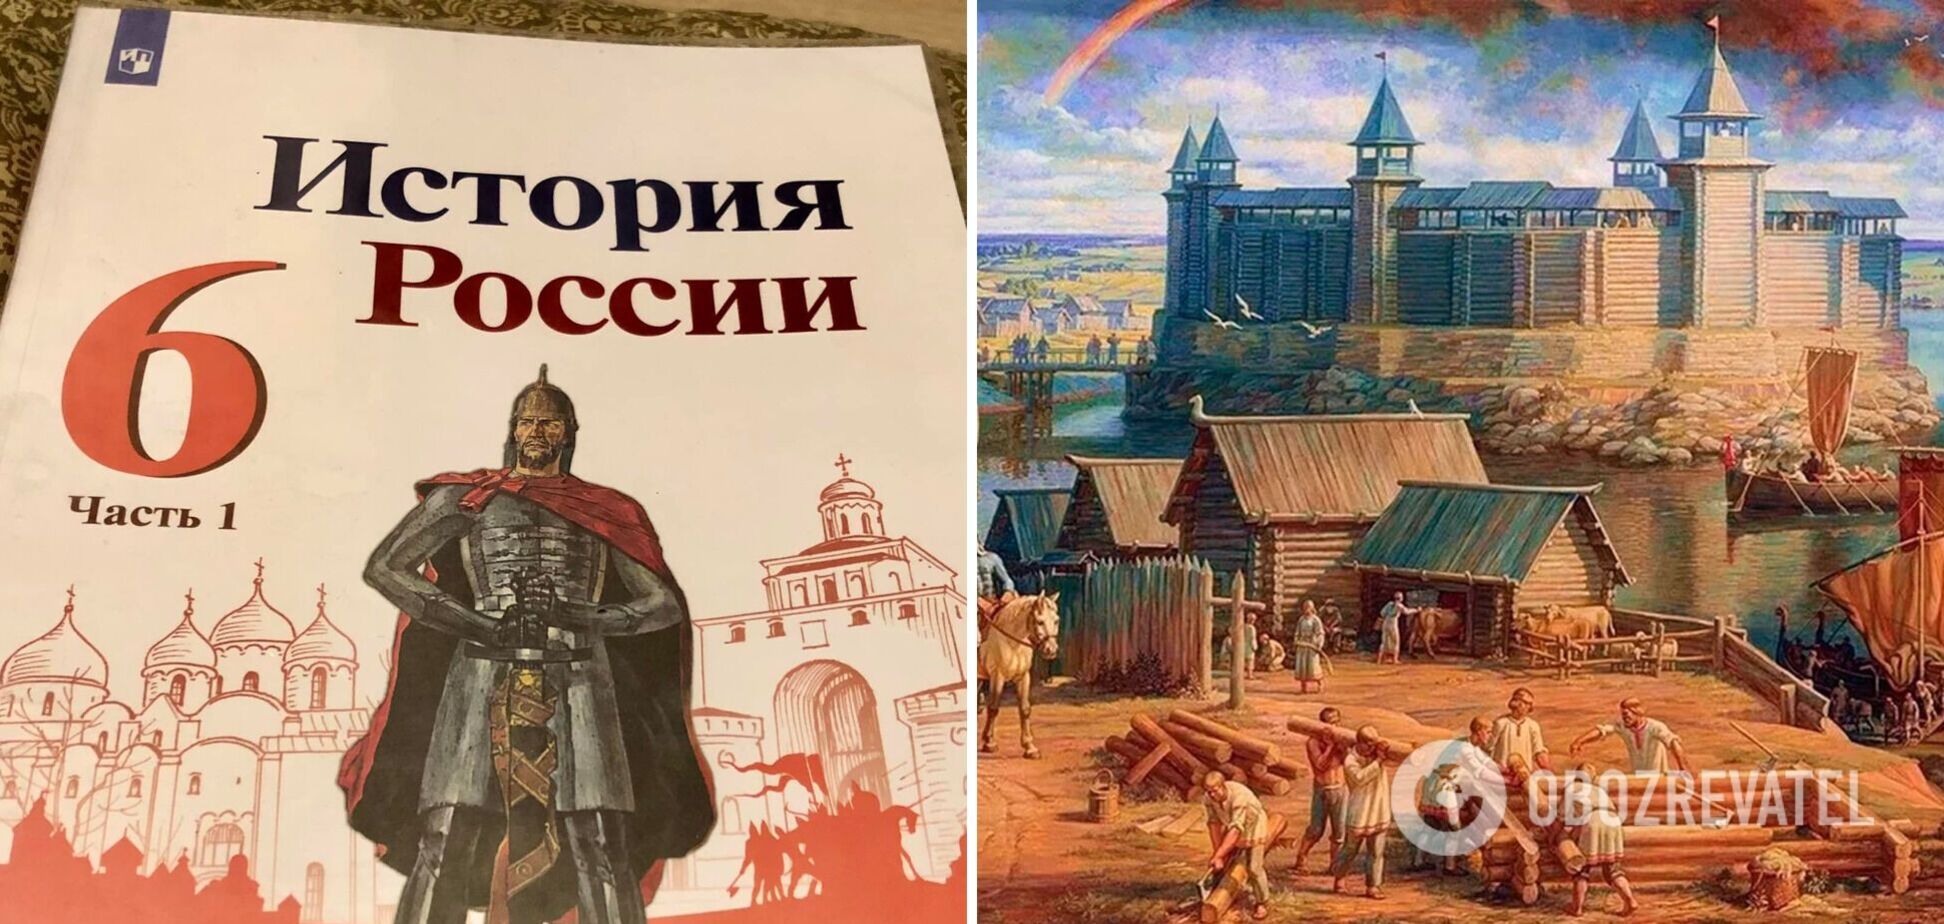 В России из учебников для школьников убрали название 'Киевская Русь'. Фото